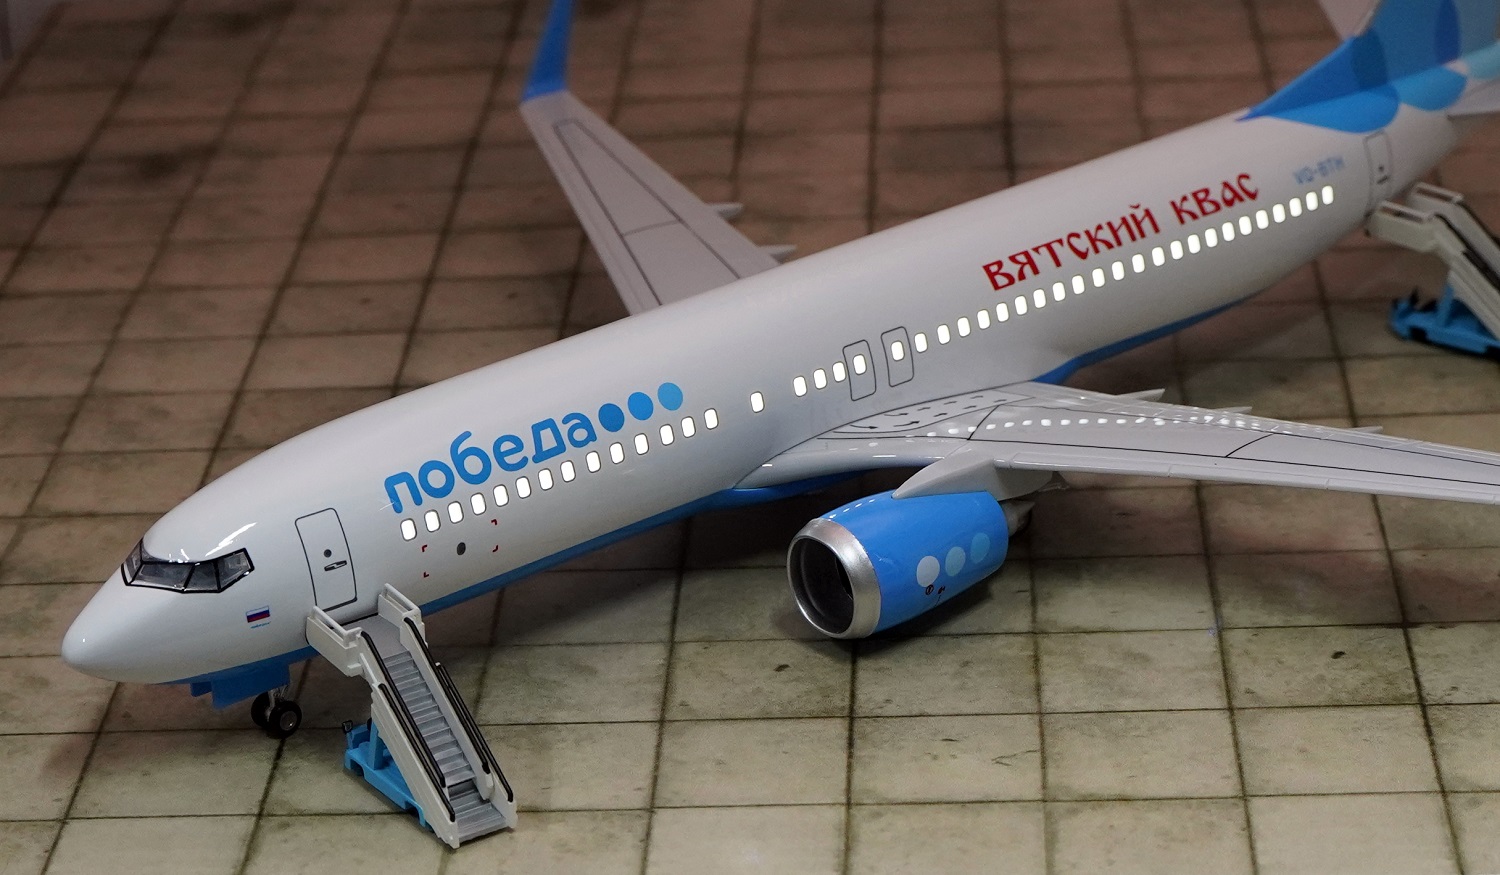    737-800  .  47 .  # 3 hobbyplus.ru